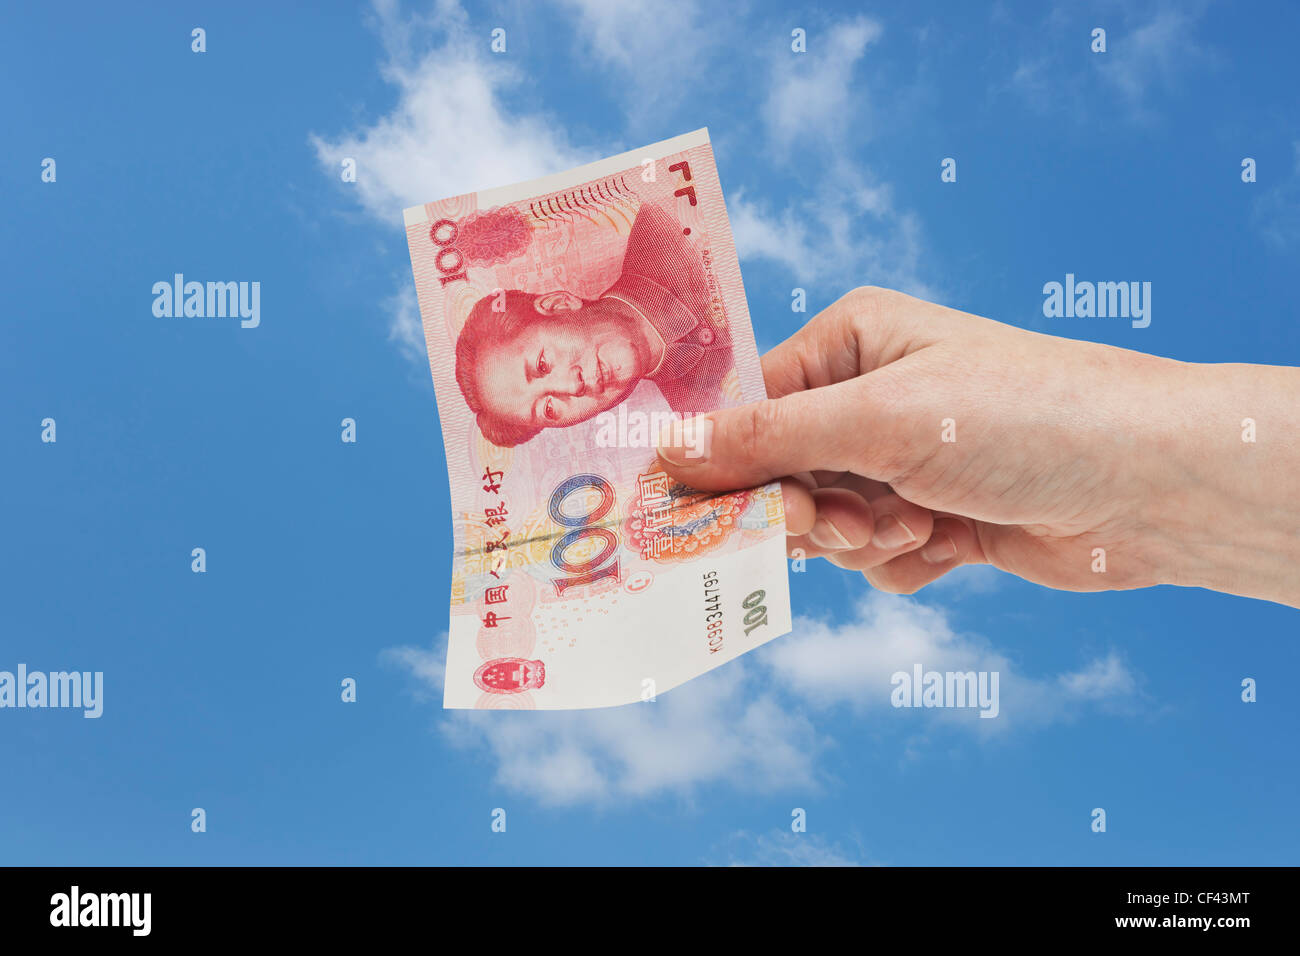 Uno cinese 100 Yuan bill con il ritratto di Mao Zedong è tenuto in mano. Il cielo è in background. Foto Stock